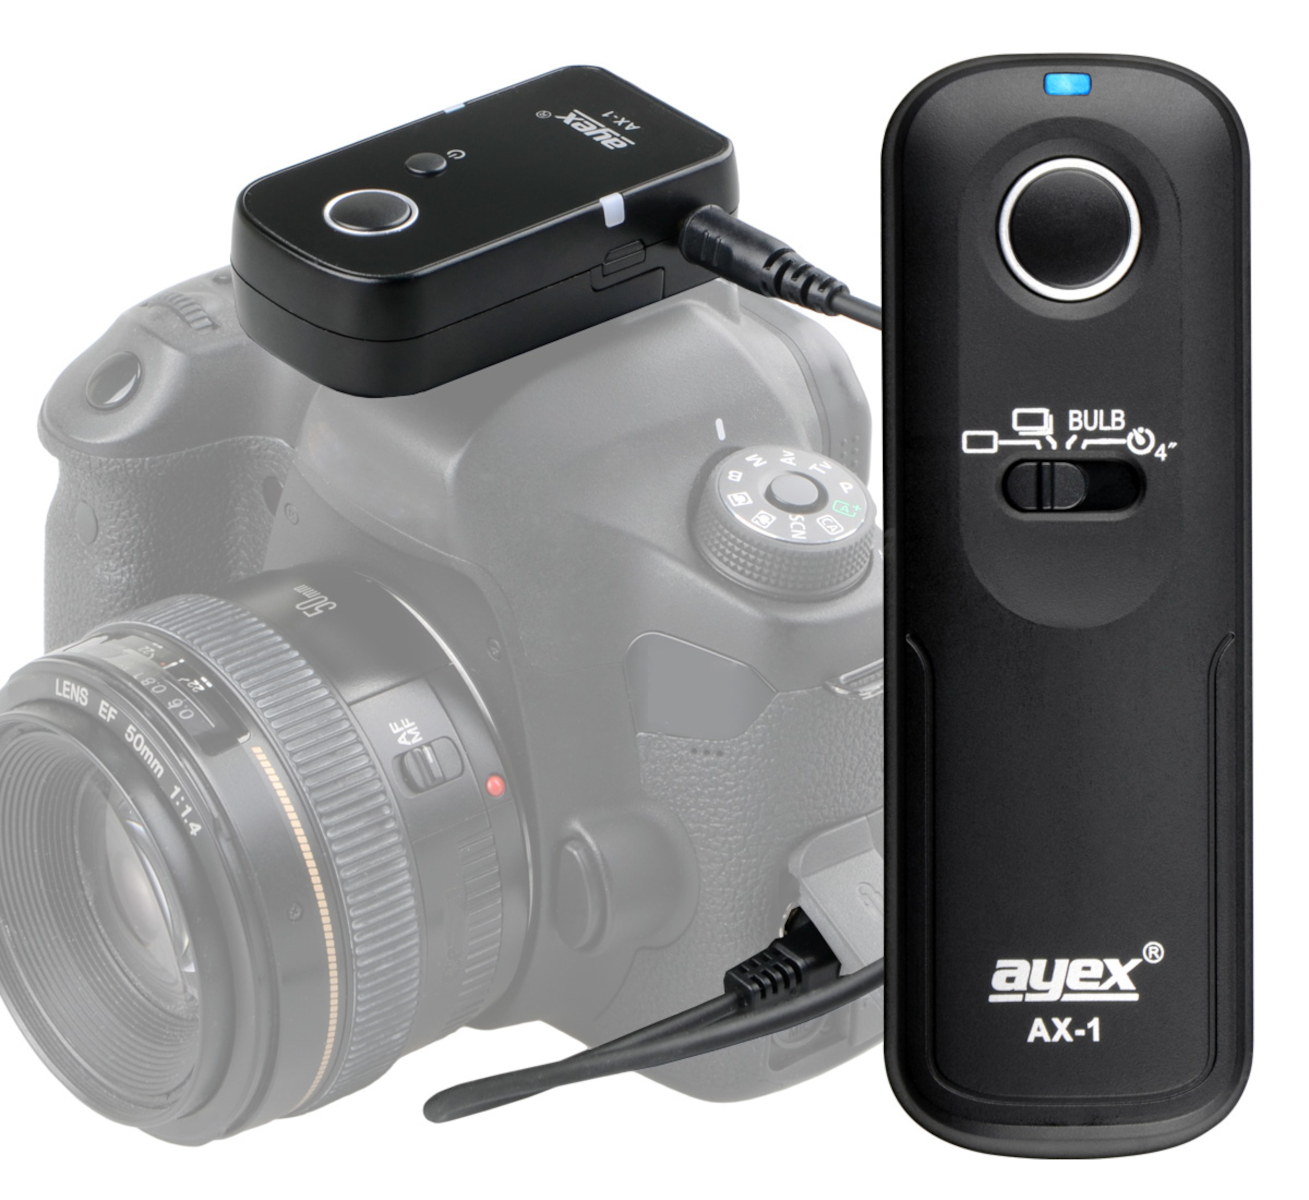 ayex Funk Fernauslöser AX-1 DC2 zB Nikon Z7 D7500 D750 D610 D90 D5600 P7700 Auslösung Serie Bulb Delay